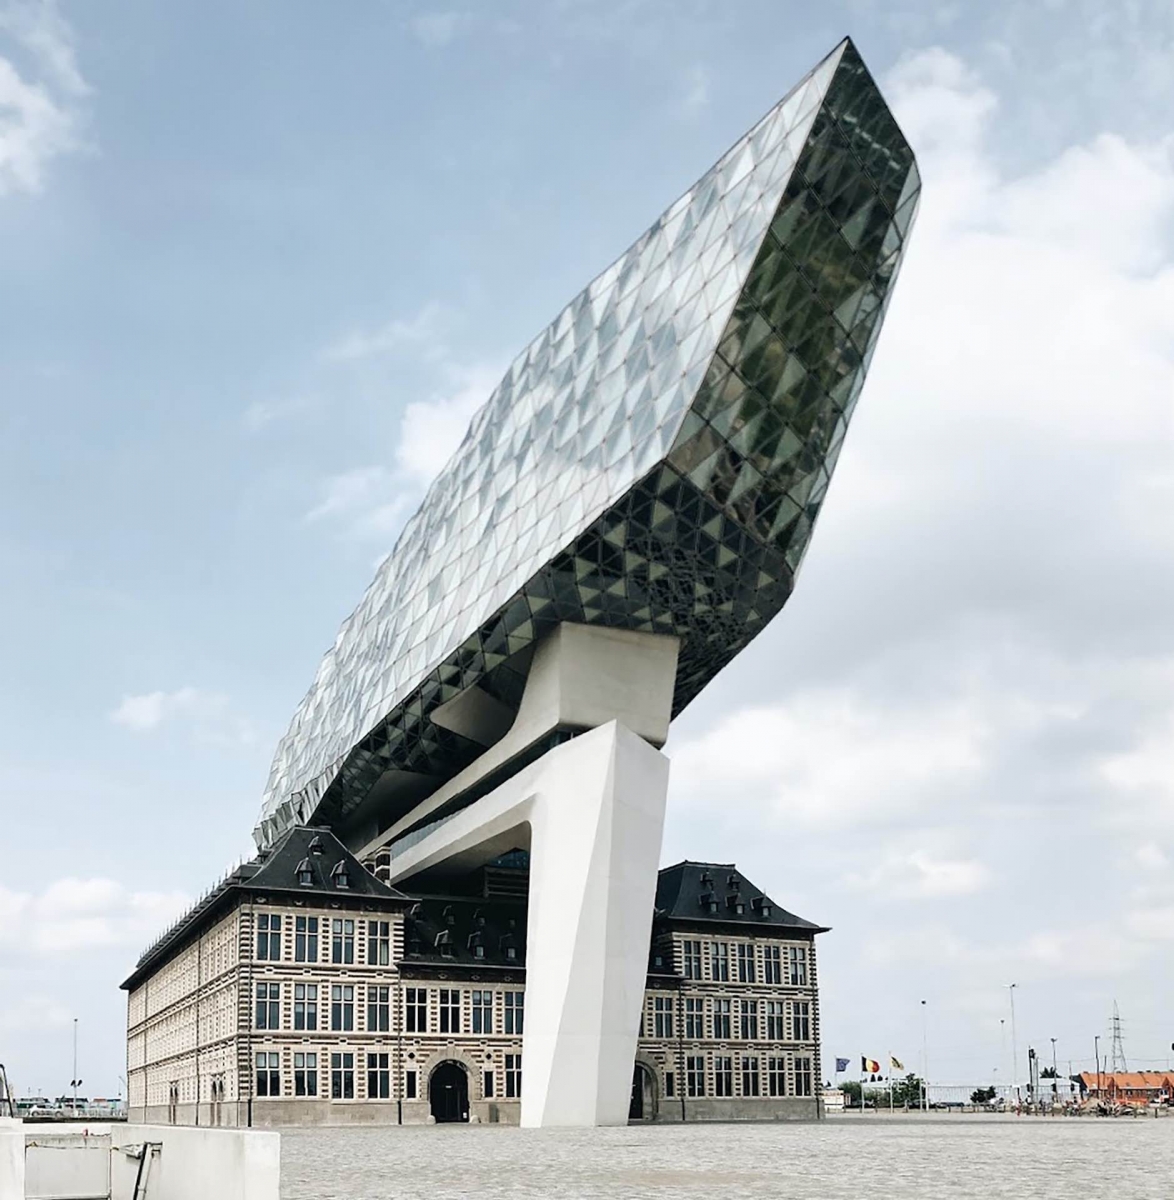 Antwerp Port House par Zaha Hadid Architects, Anvers, Belgique